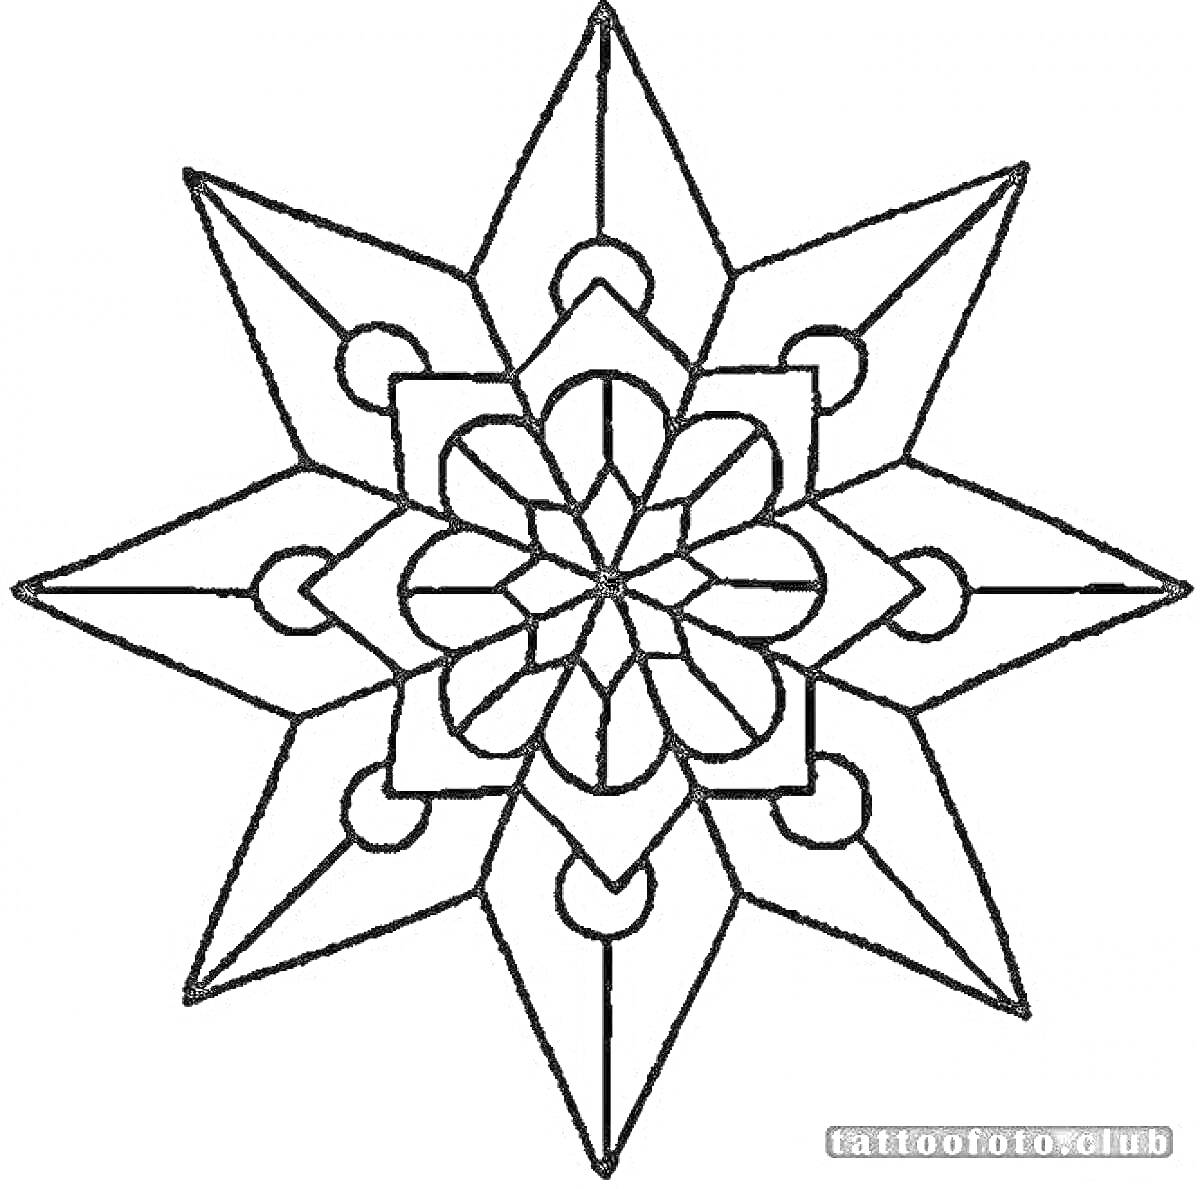 Раскраска Рисунок раскраски с рождественской звездой с восемью лучами. В центре звезды сложный узор, окруженный рядом кругов, расположенных между лучами.